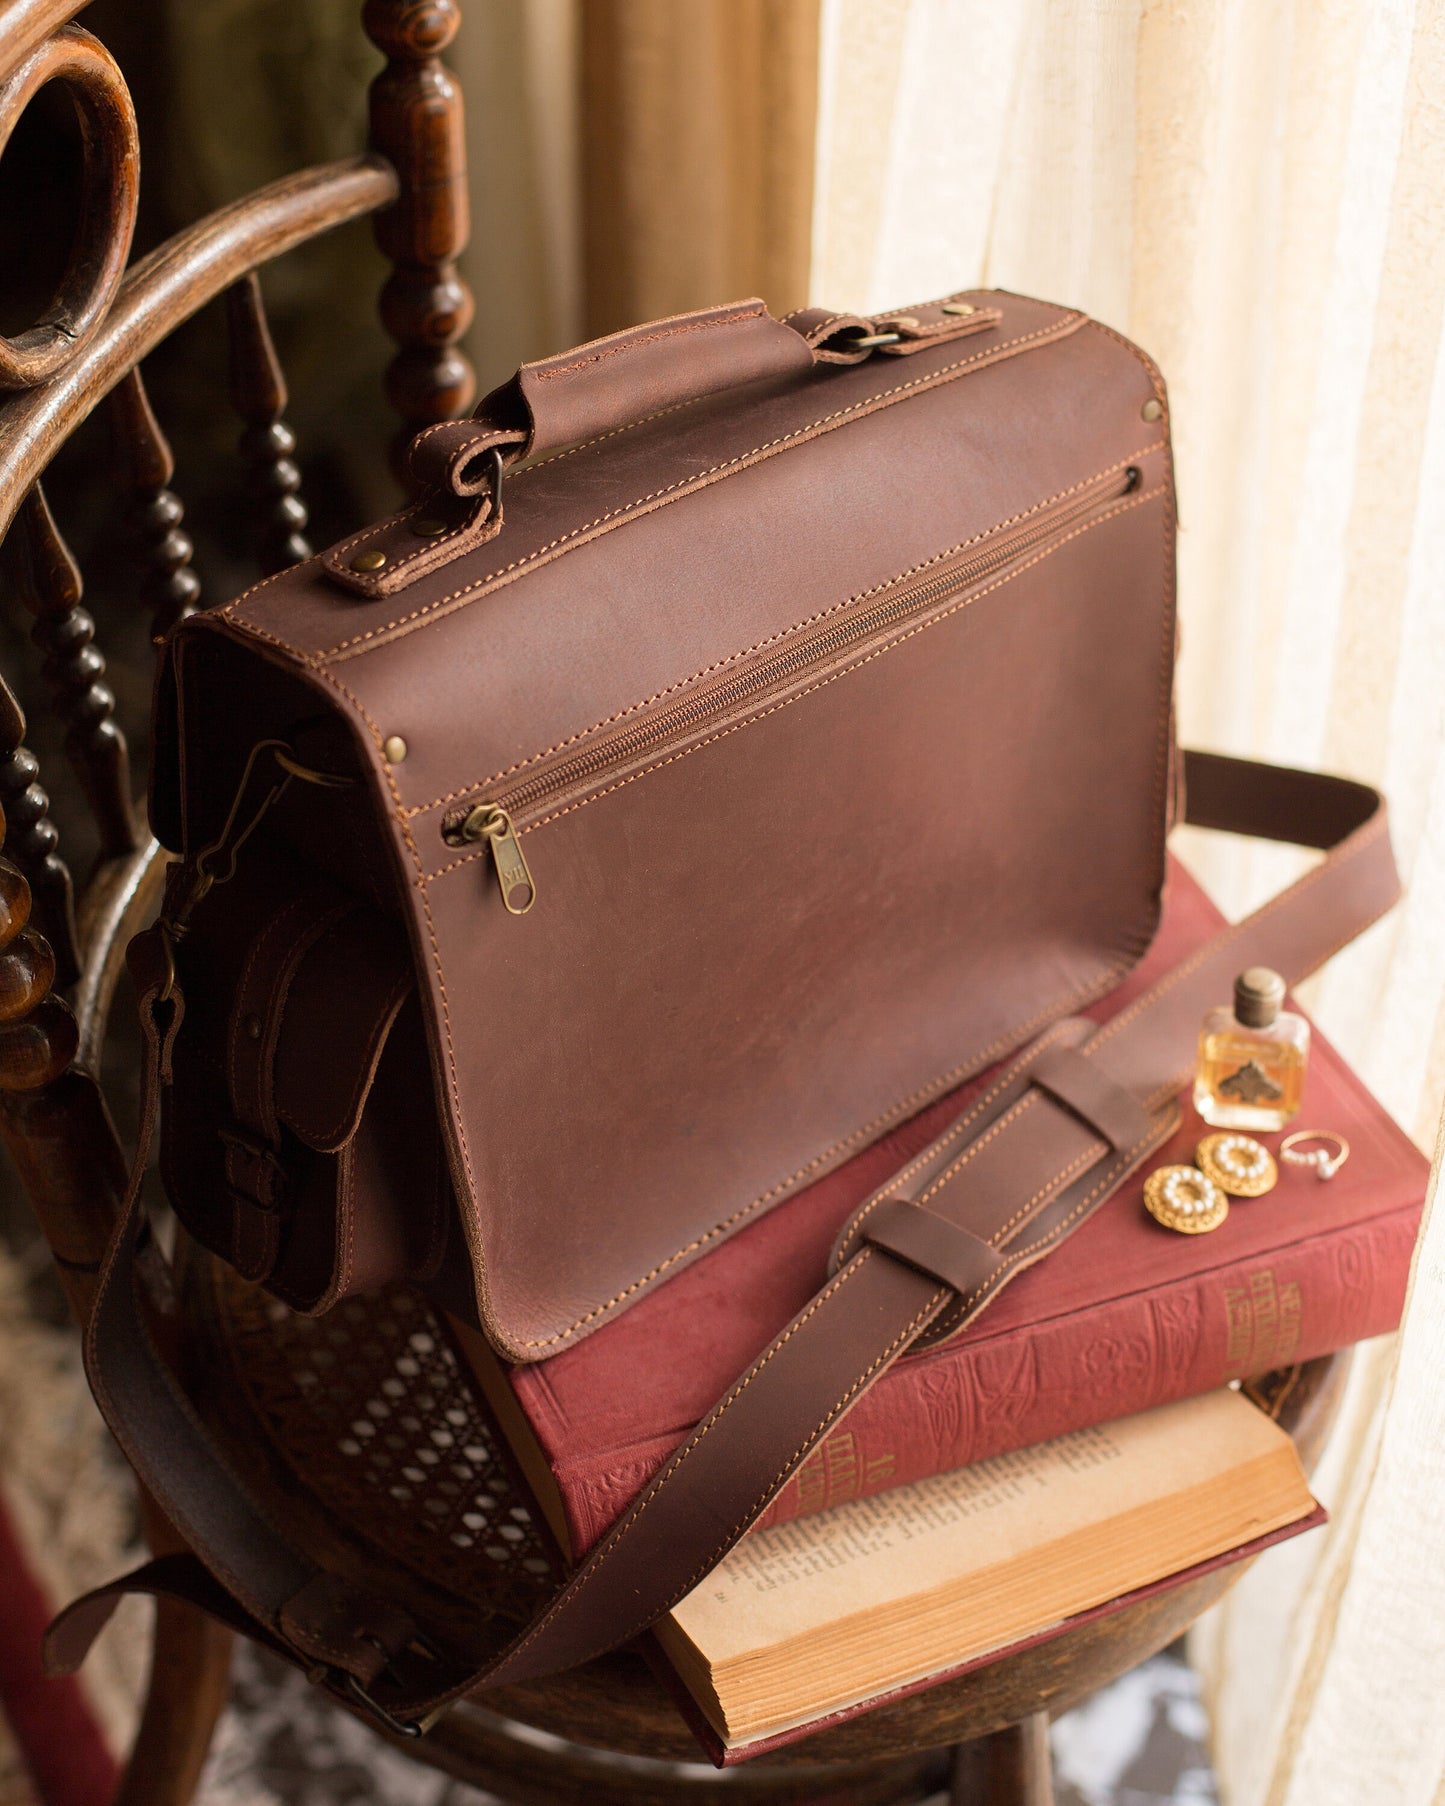 Camera bag for men and women, Vintage camera bag, Dslr camera bag, Brown leather camera bag, Antique camera, Lens bag, leather satchel